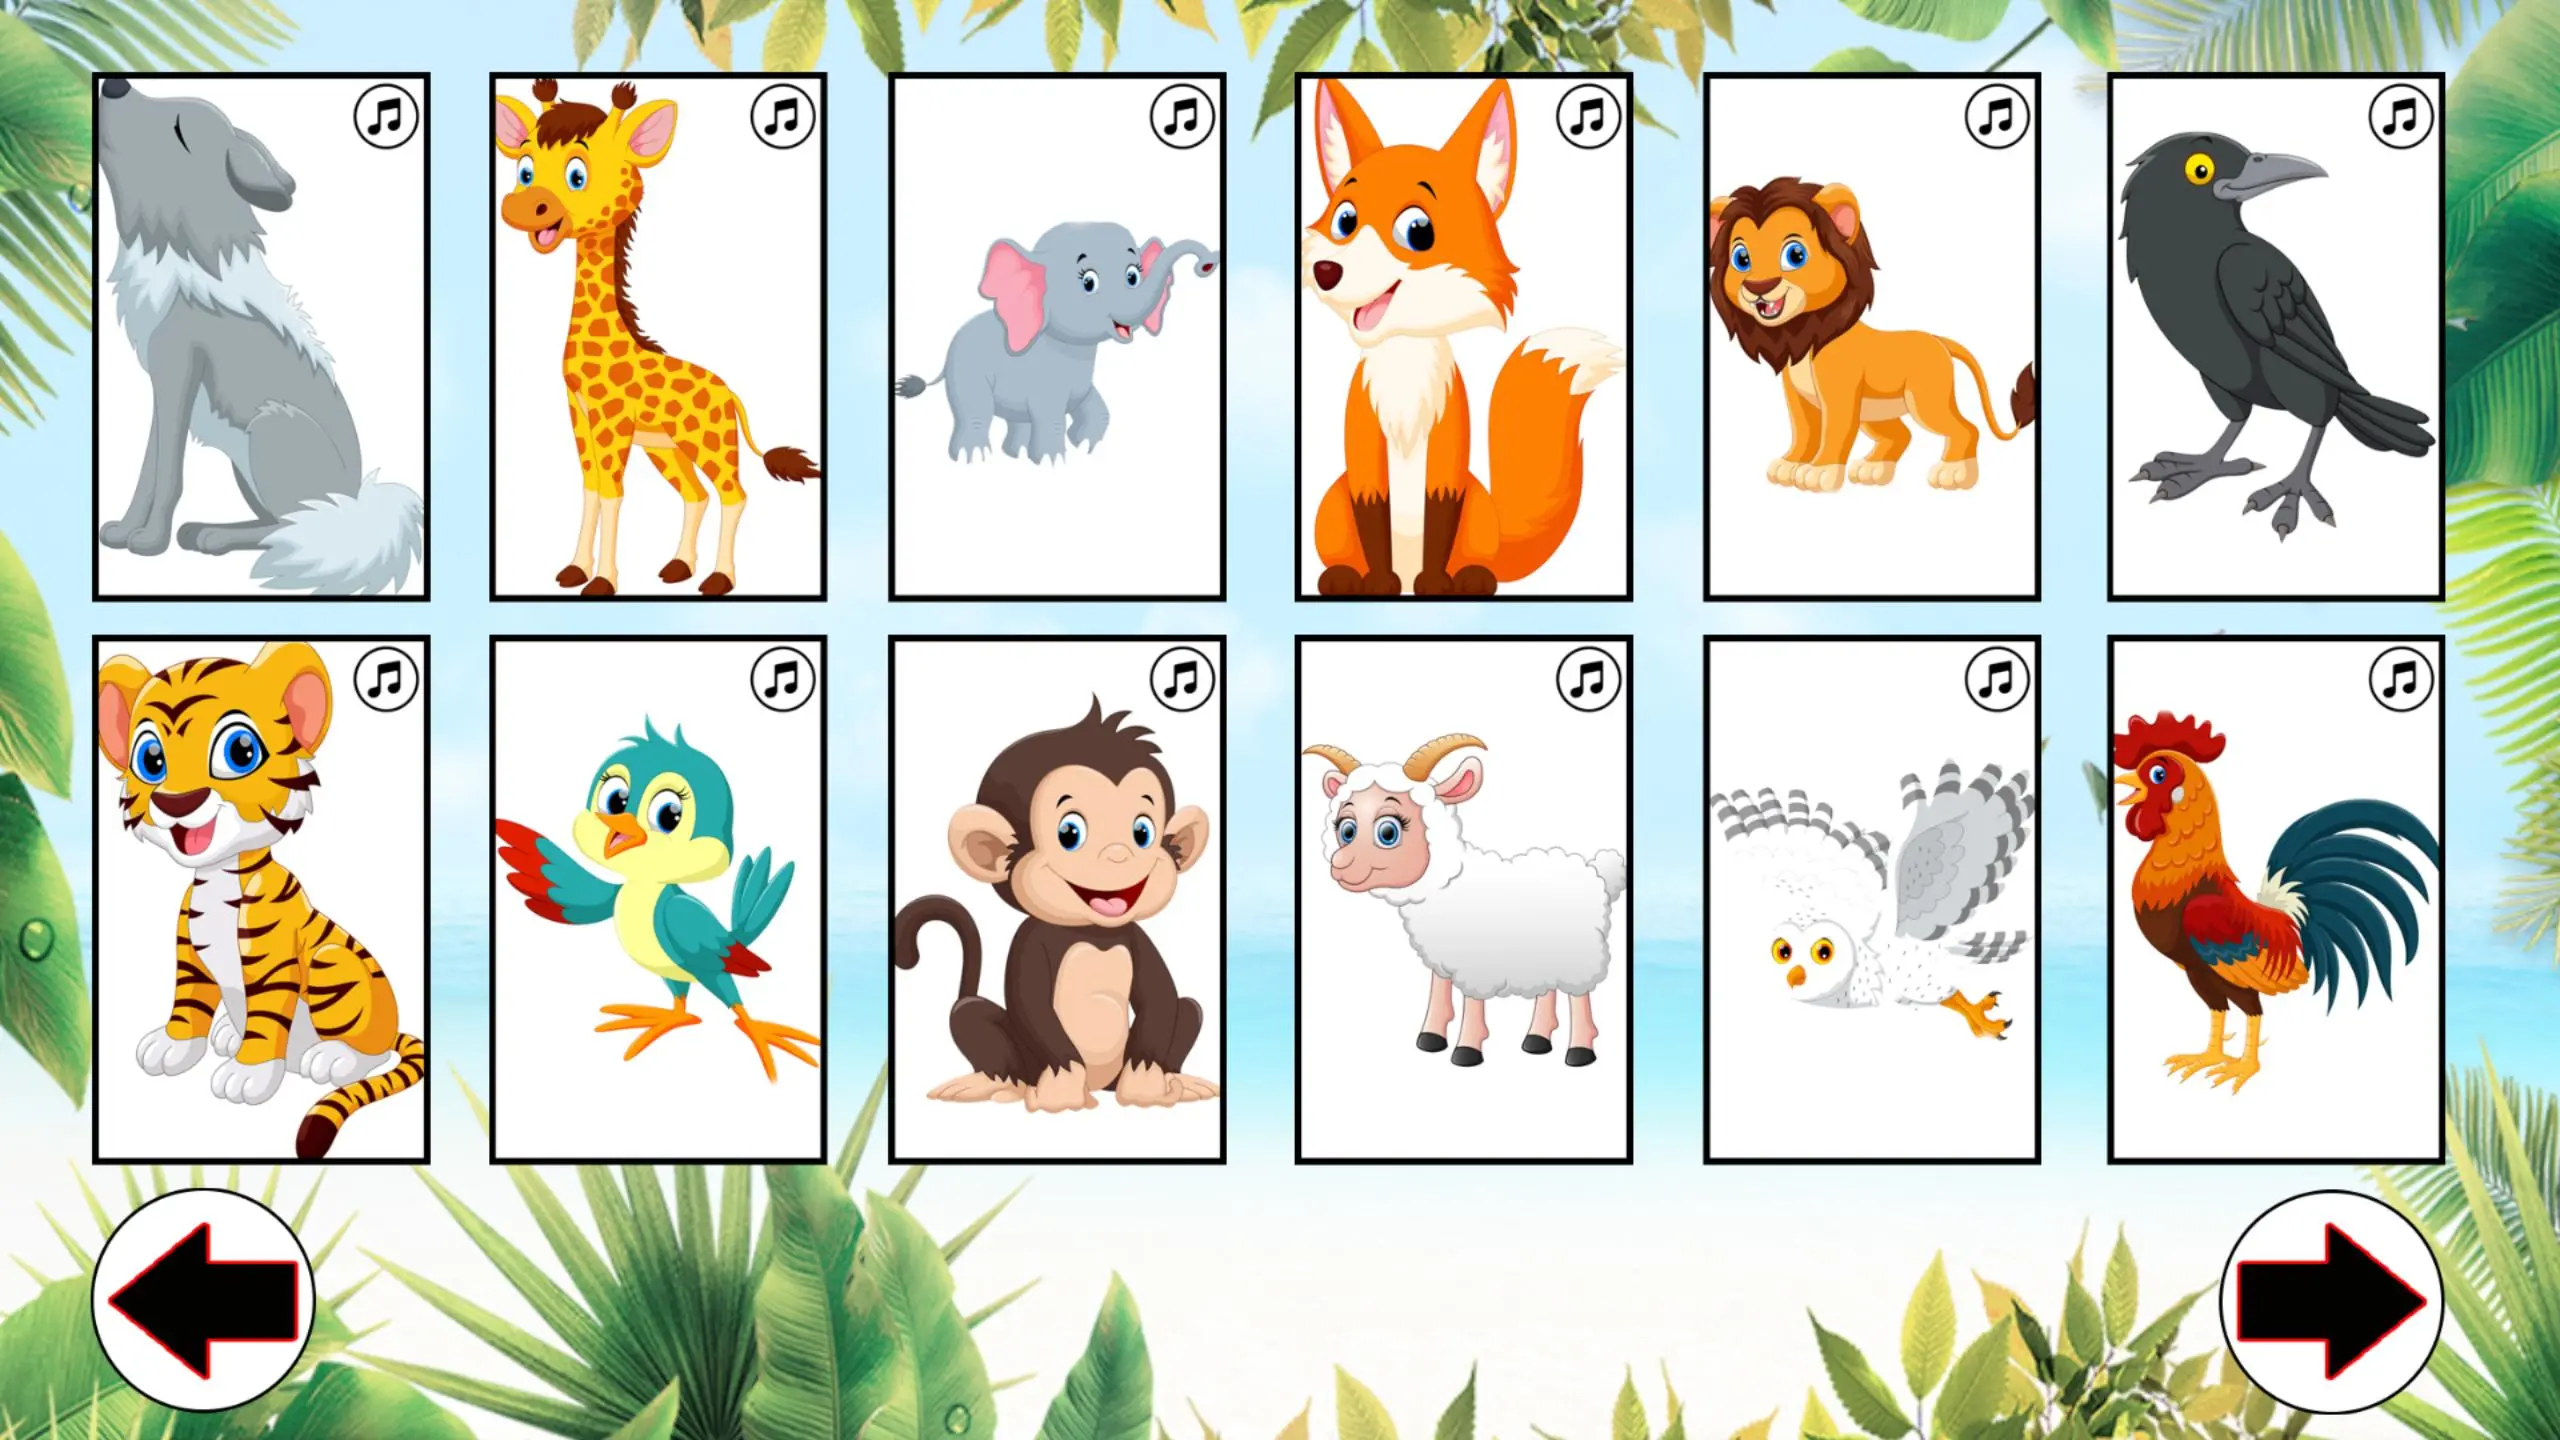 Tải xuống Learn animals: Animal sounds and names for kids trên PC |  GameLoop chính thức